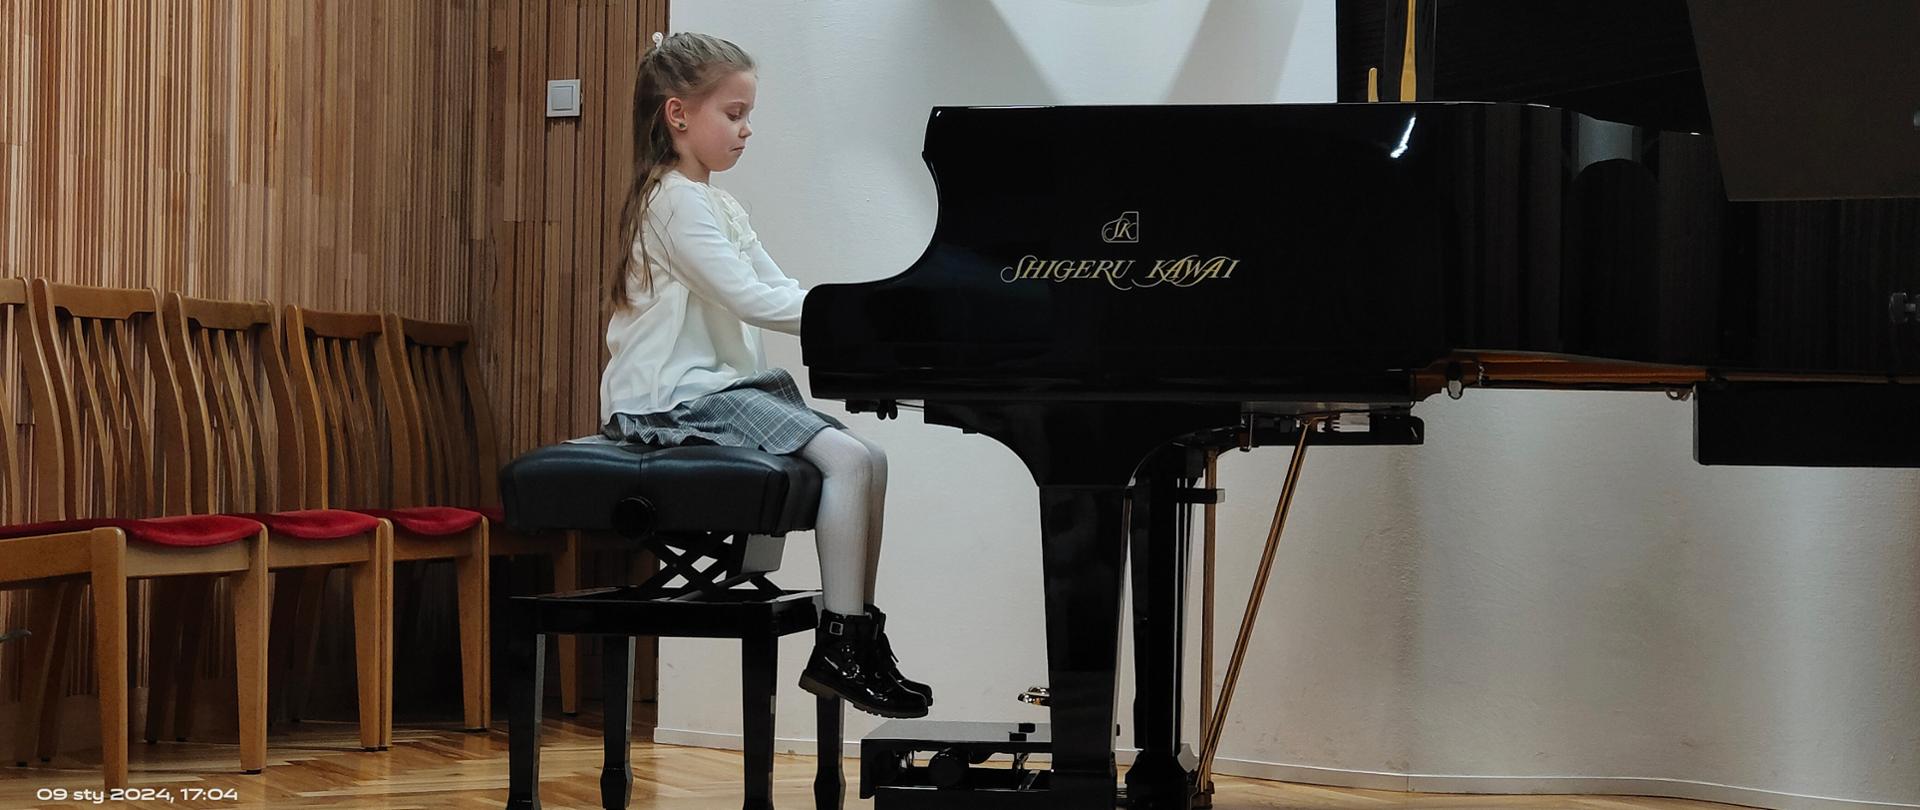 Uczennica gra na fortepianie podczas występu na scenie